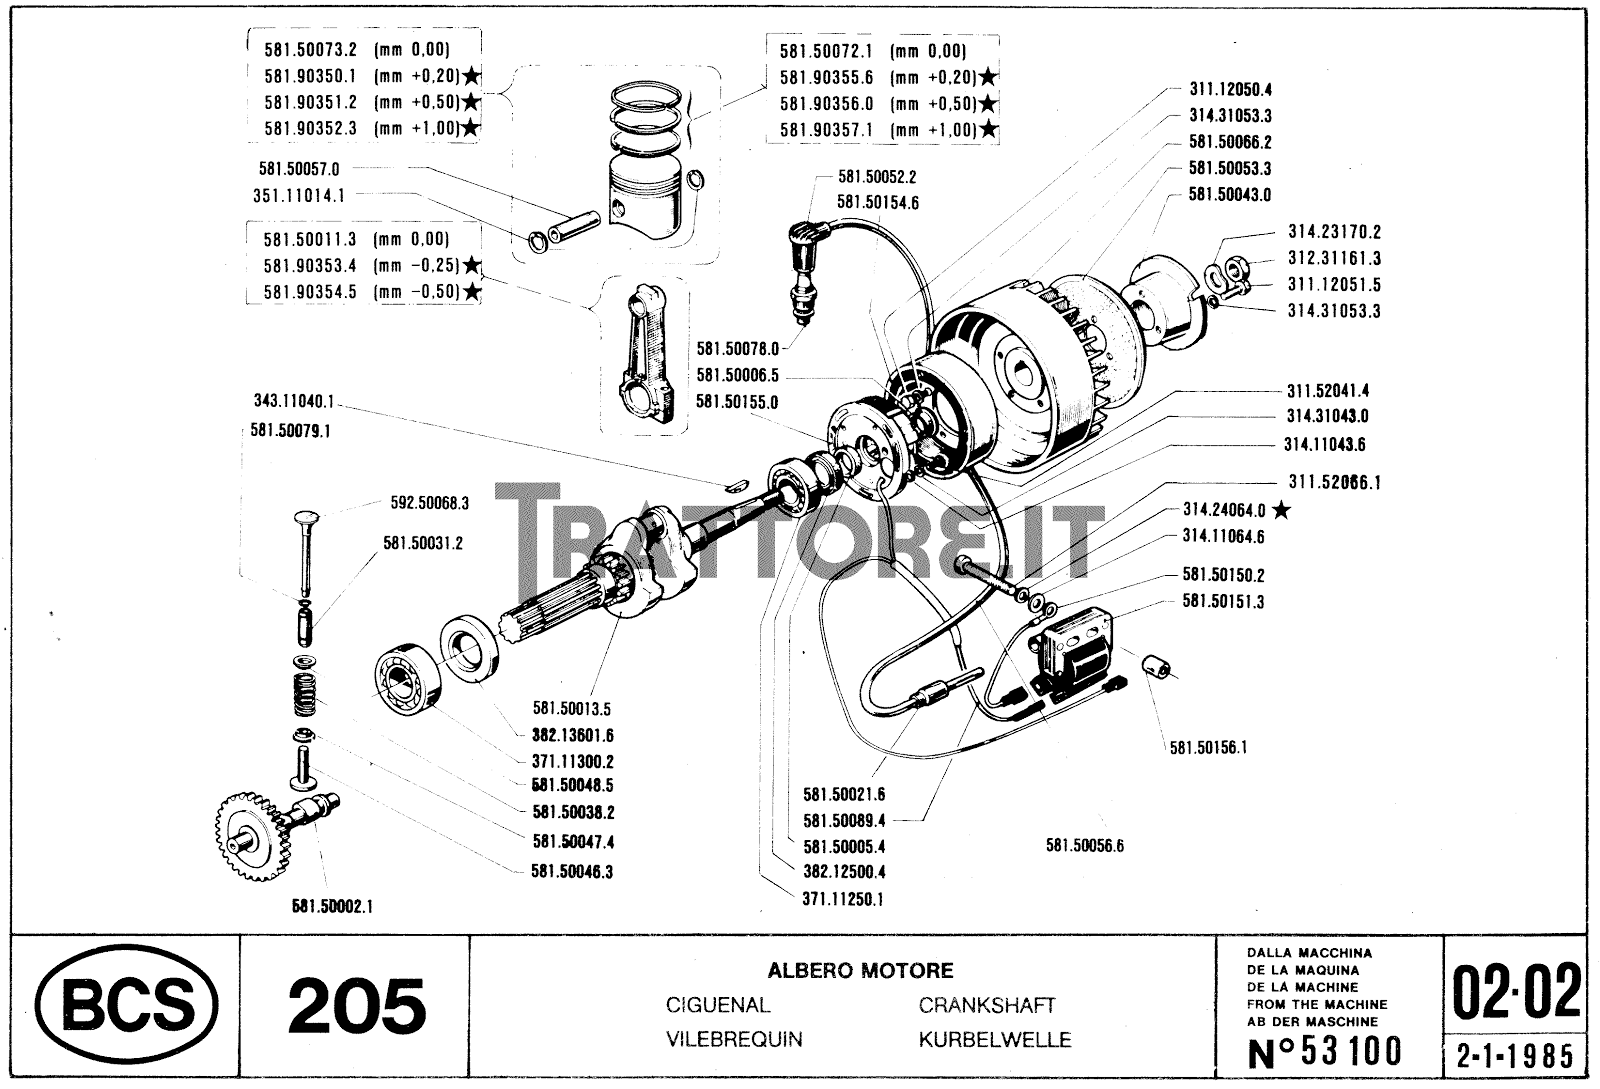 Bcs 205 caratteristiche – Dispositivo arresto motori lombardini